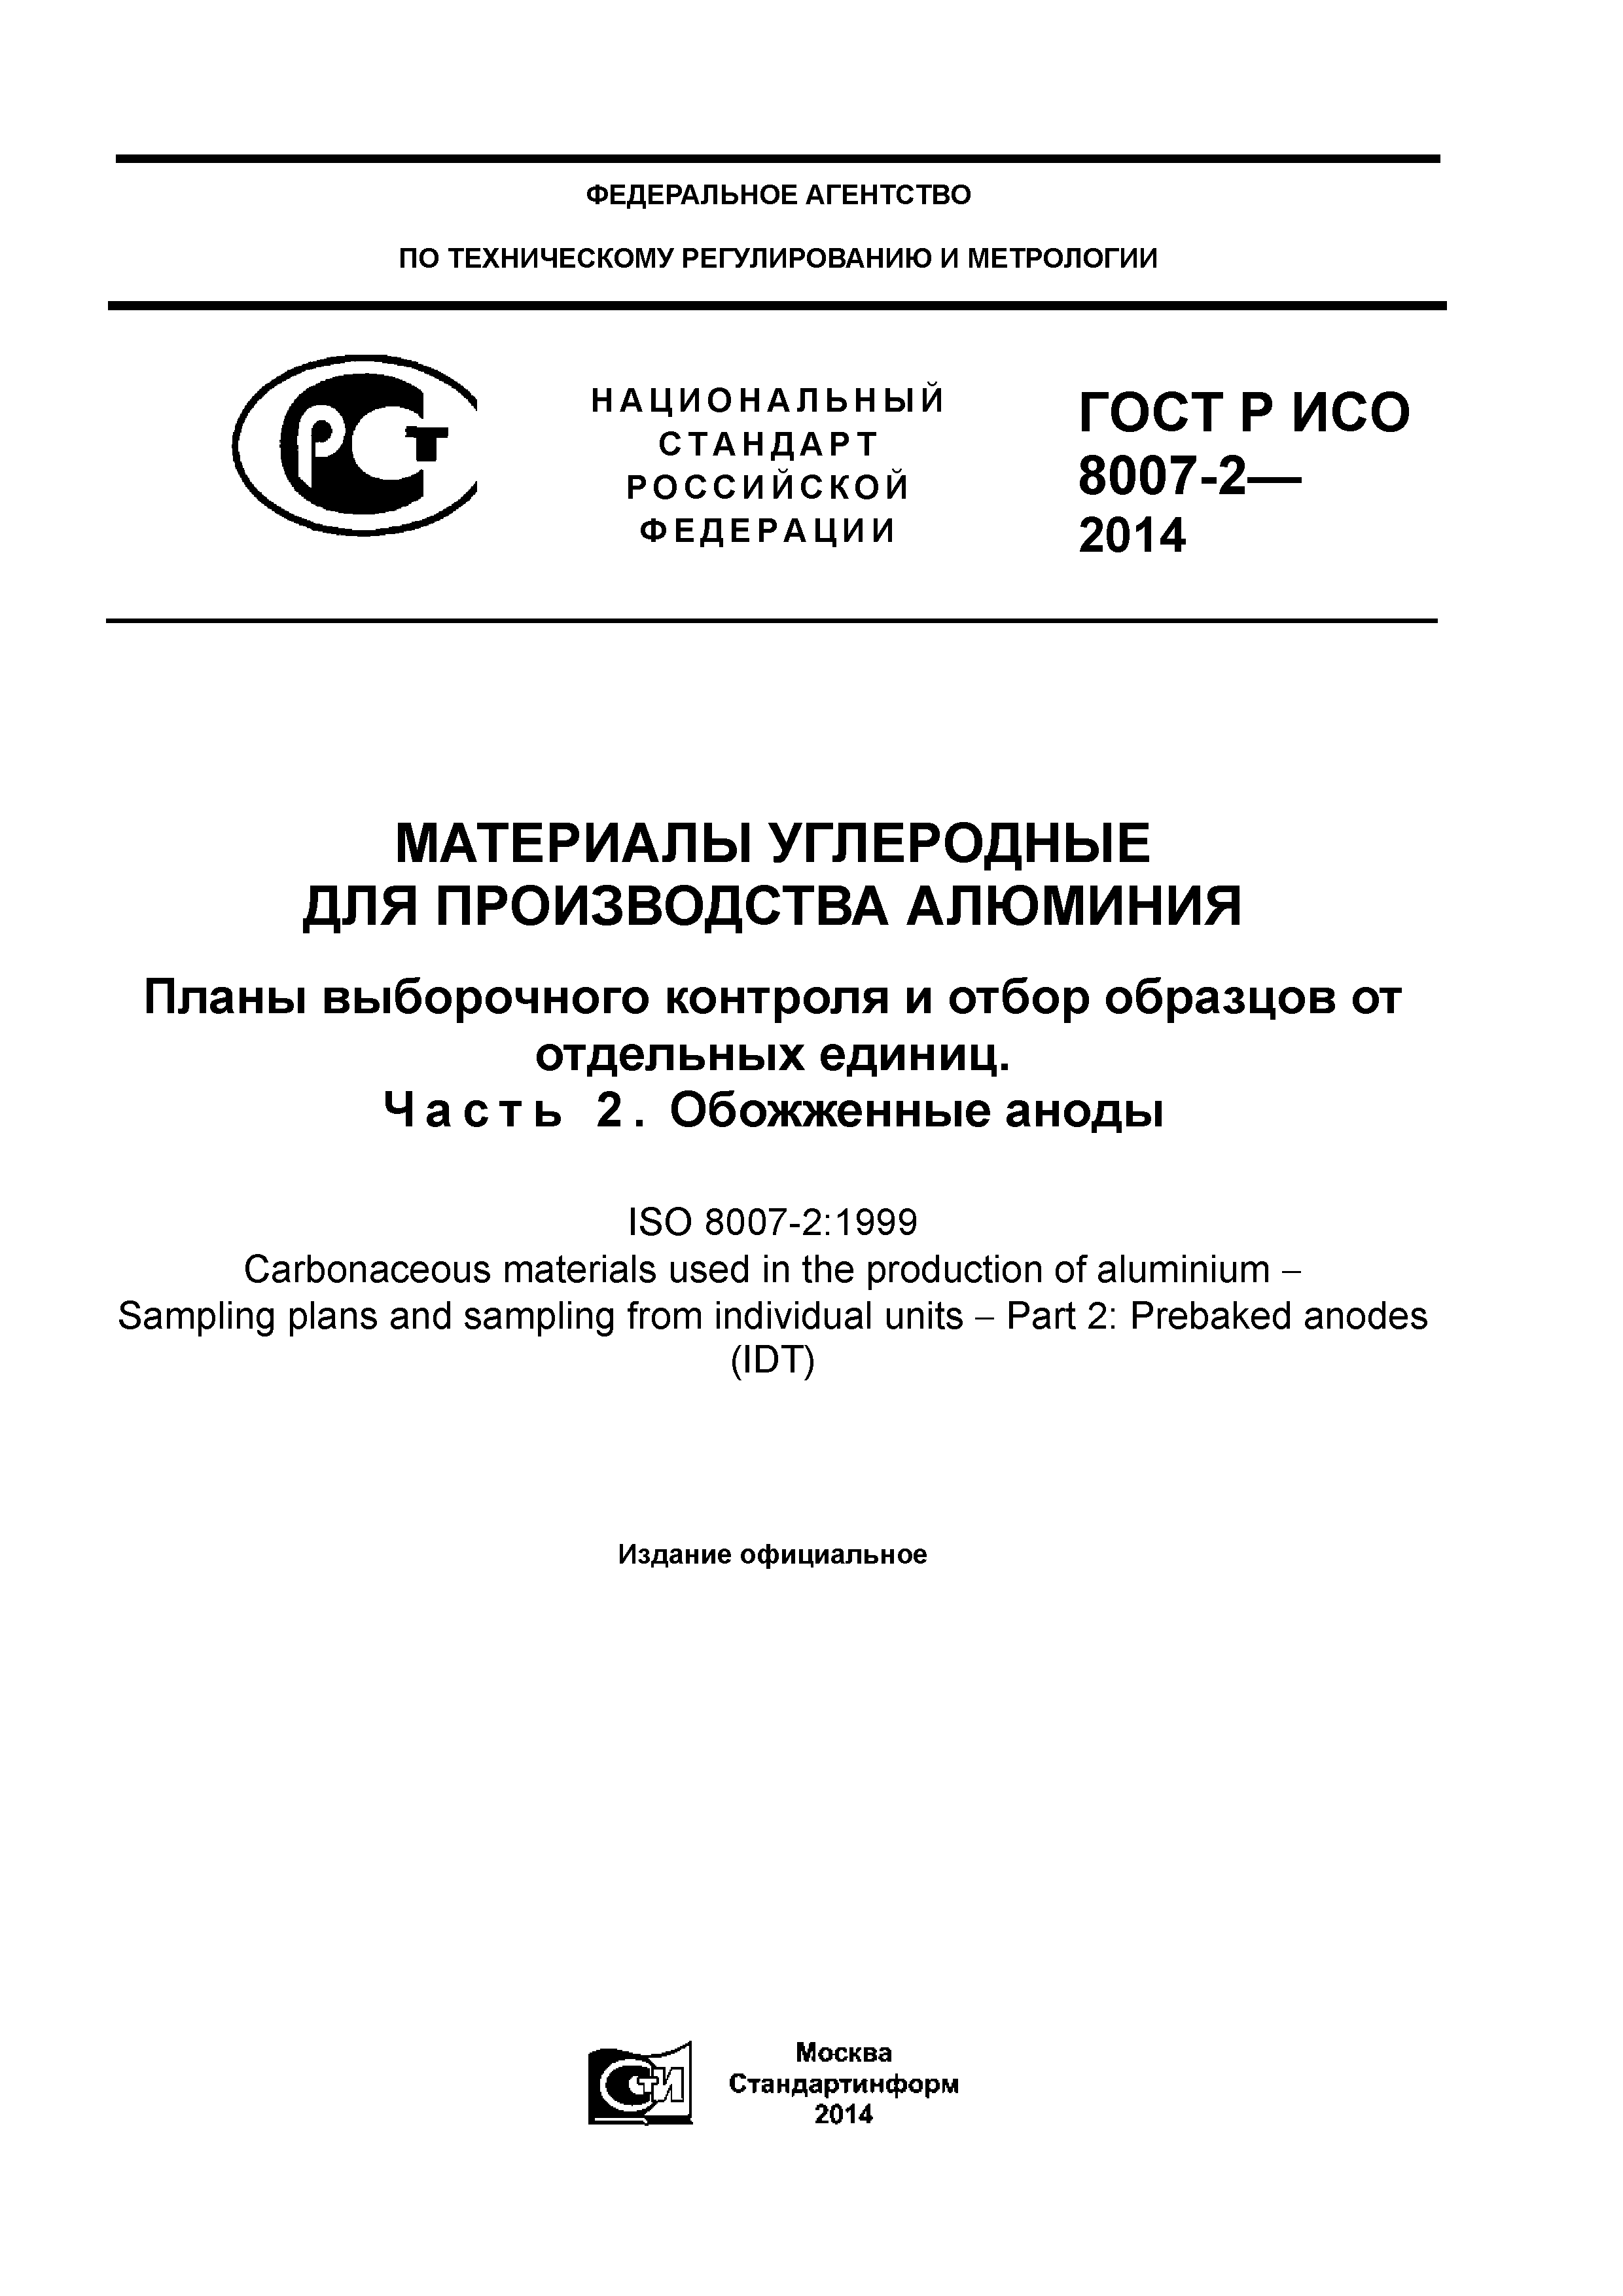 ГОСТ Р ИСО 8007-2-2014